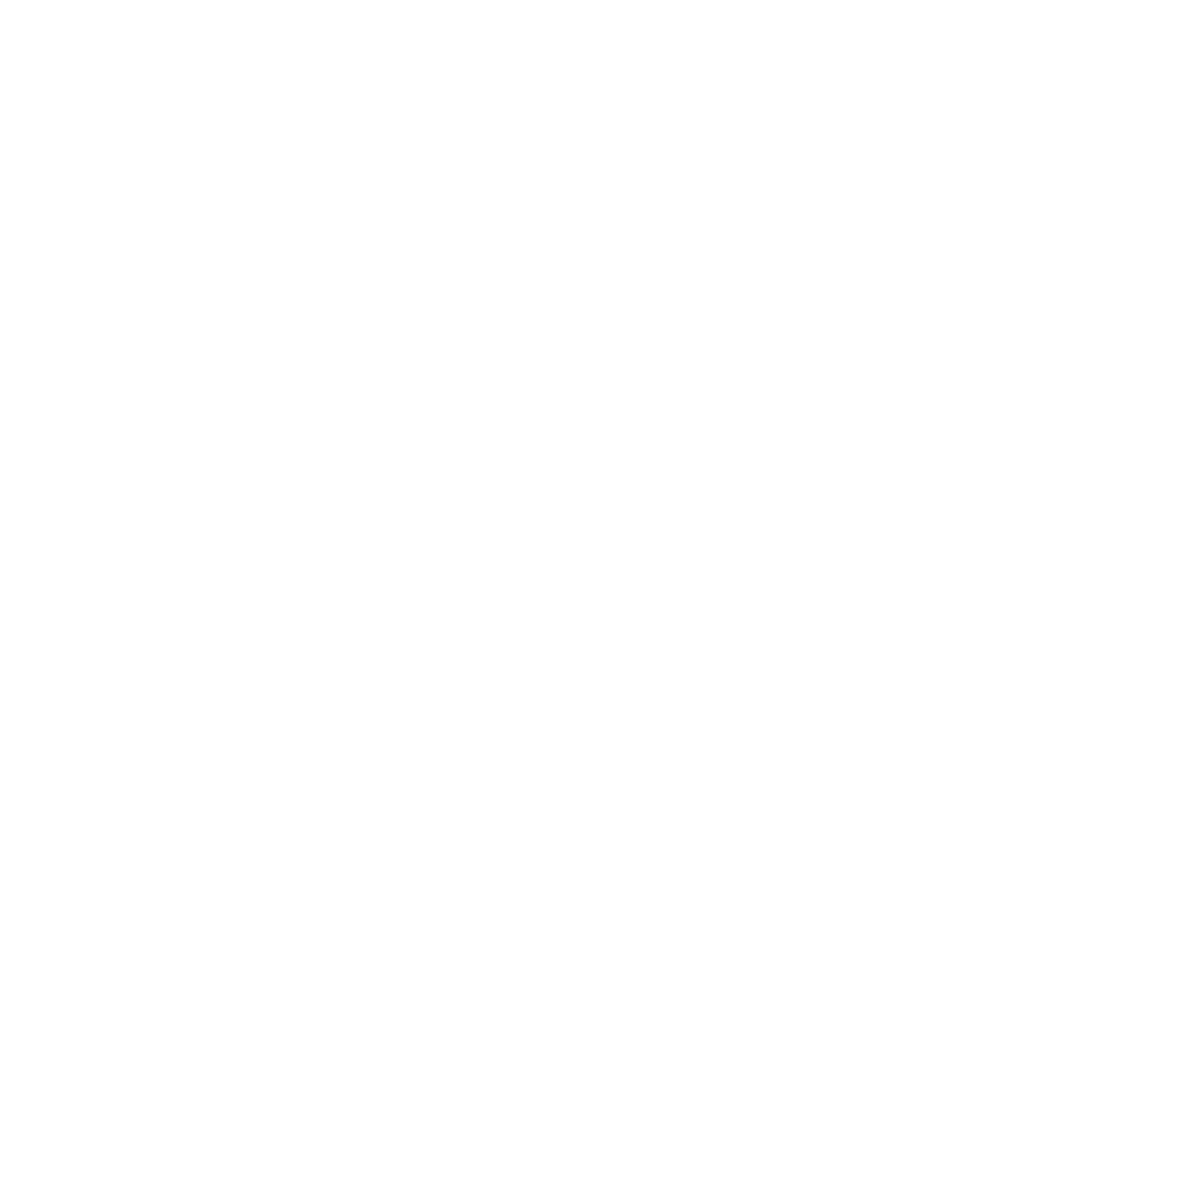 SAHARA THEATER